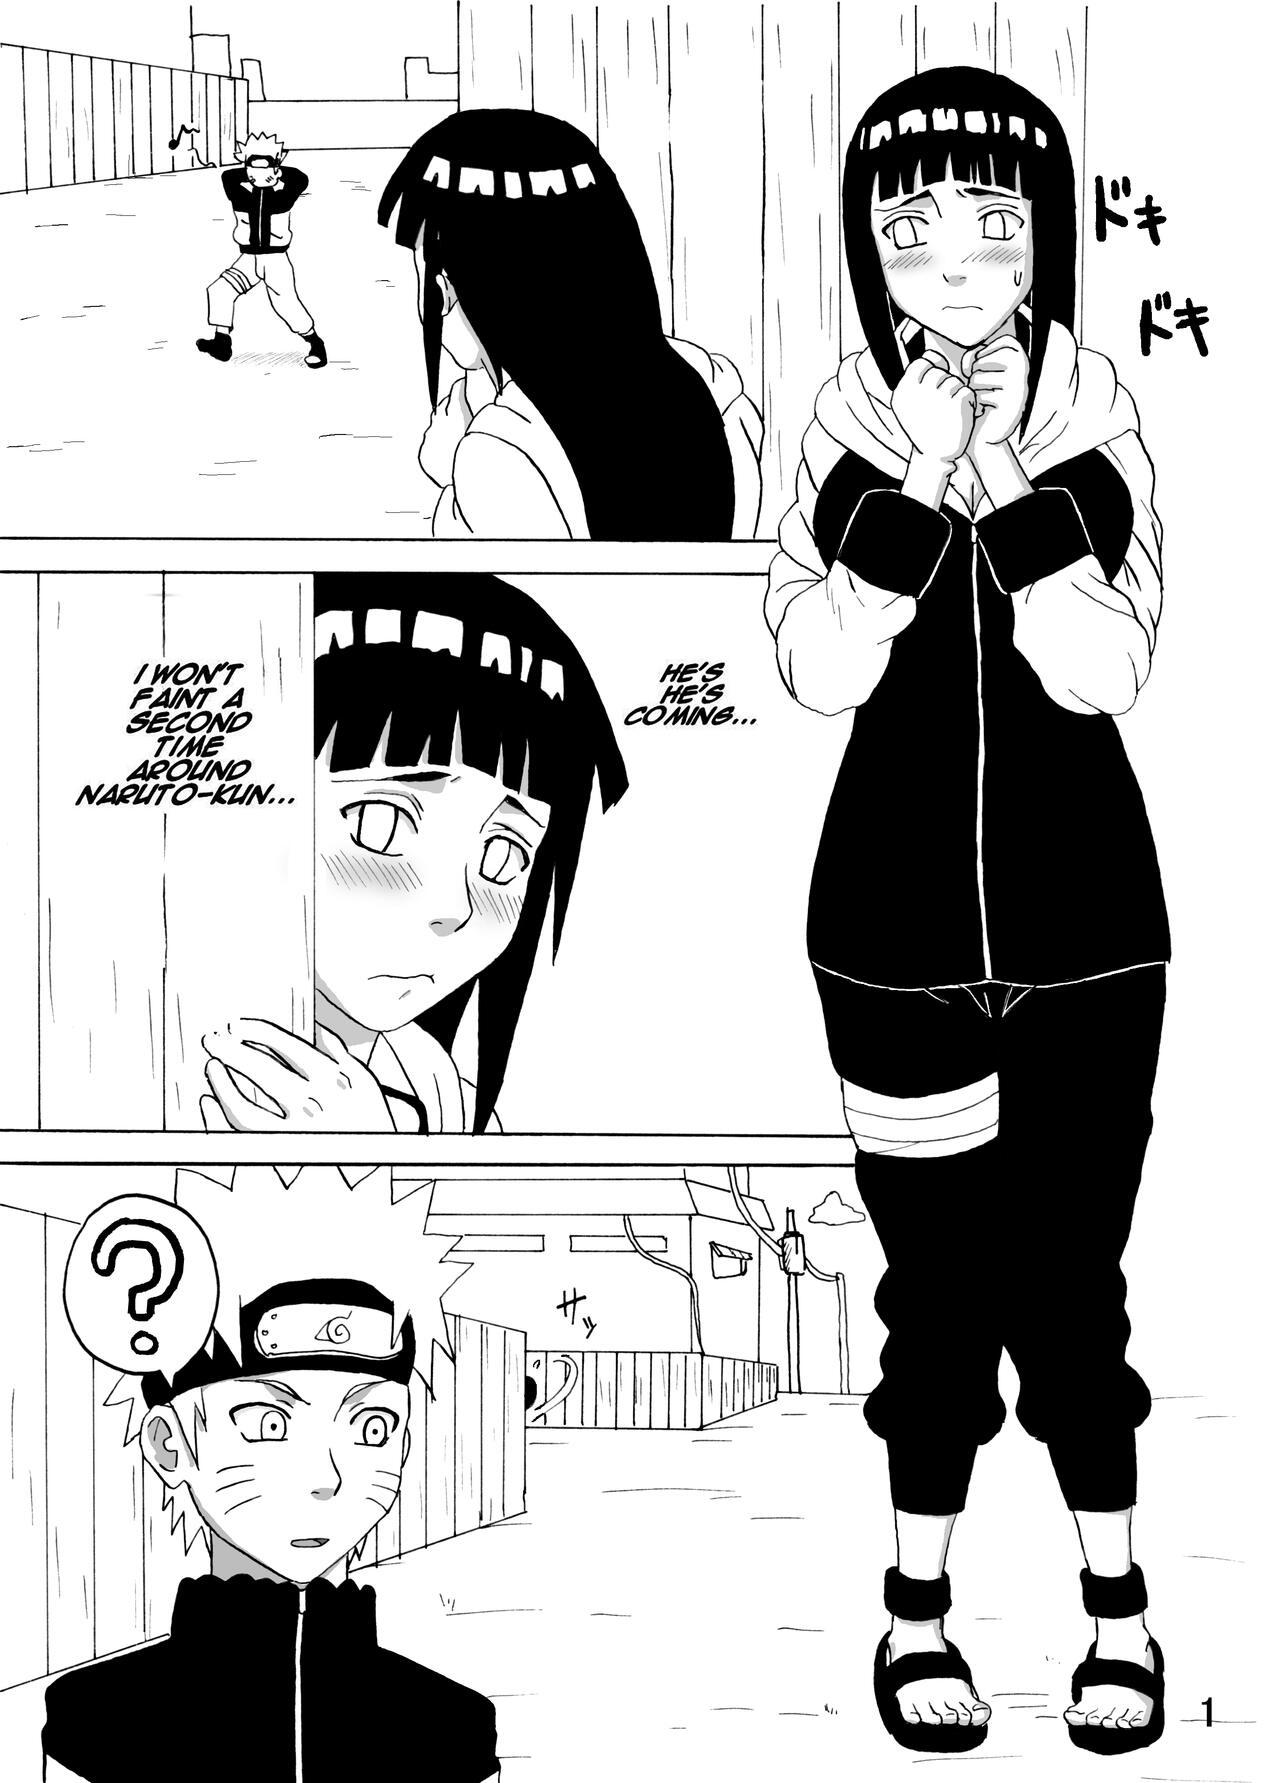 Porno Amateur Hinata Ganbaru! | Hinata Fight! - Naruto Anale - Page 2